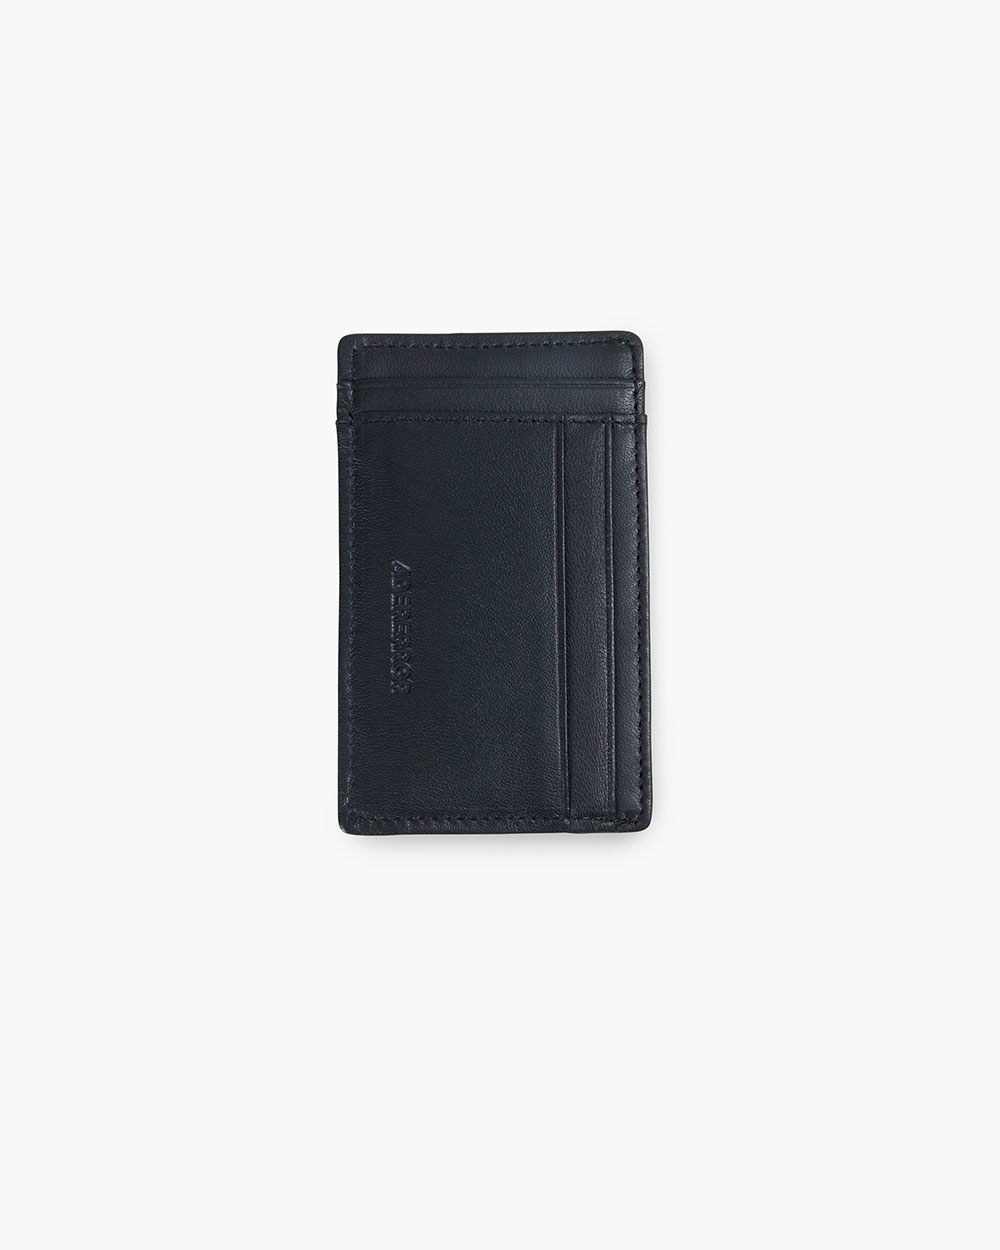 ADERERROR chain wallet card case